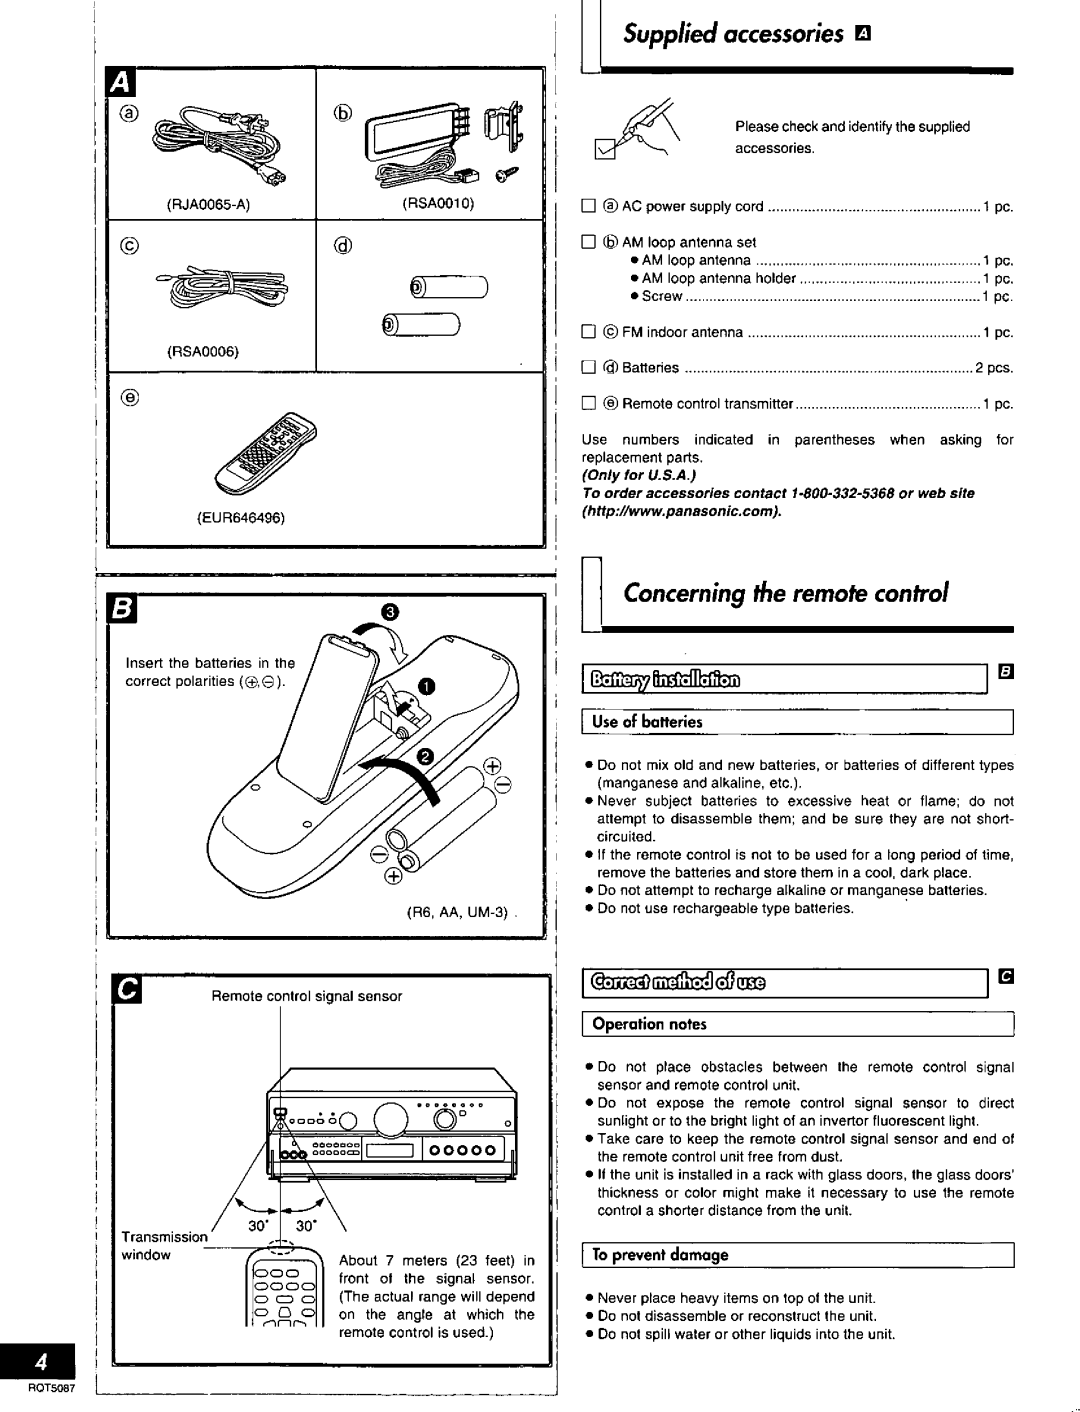 Technics SA-AX7, RQT5087-Y manual 